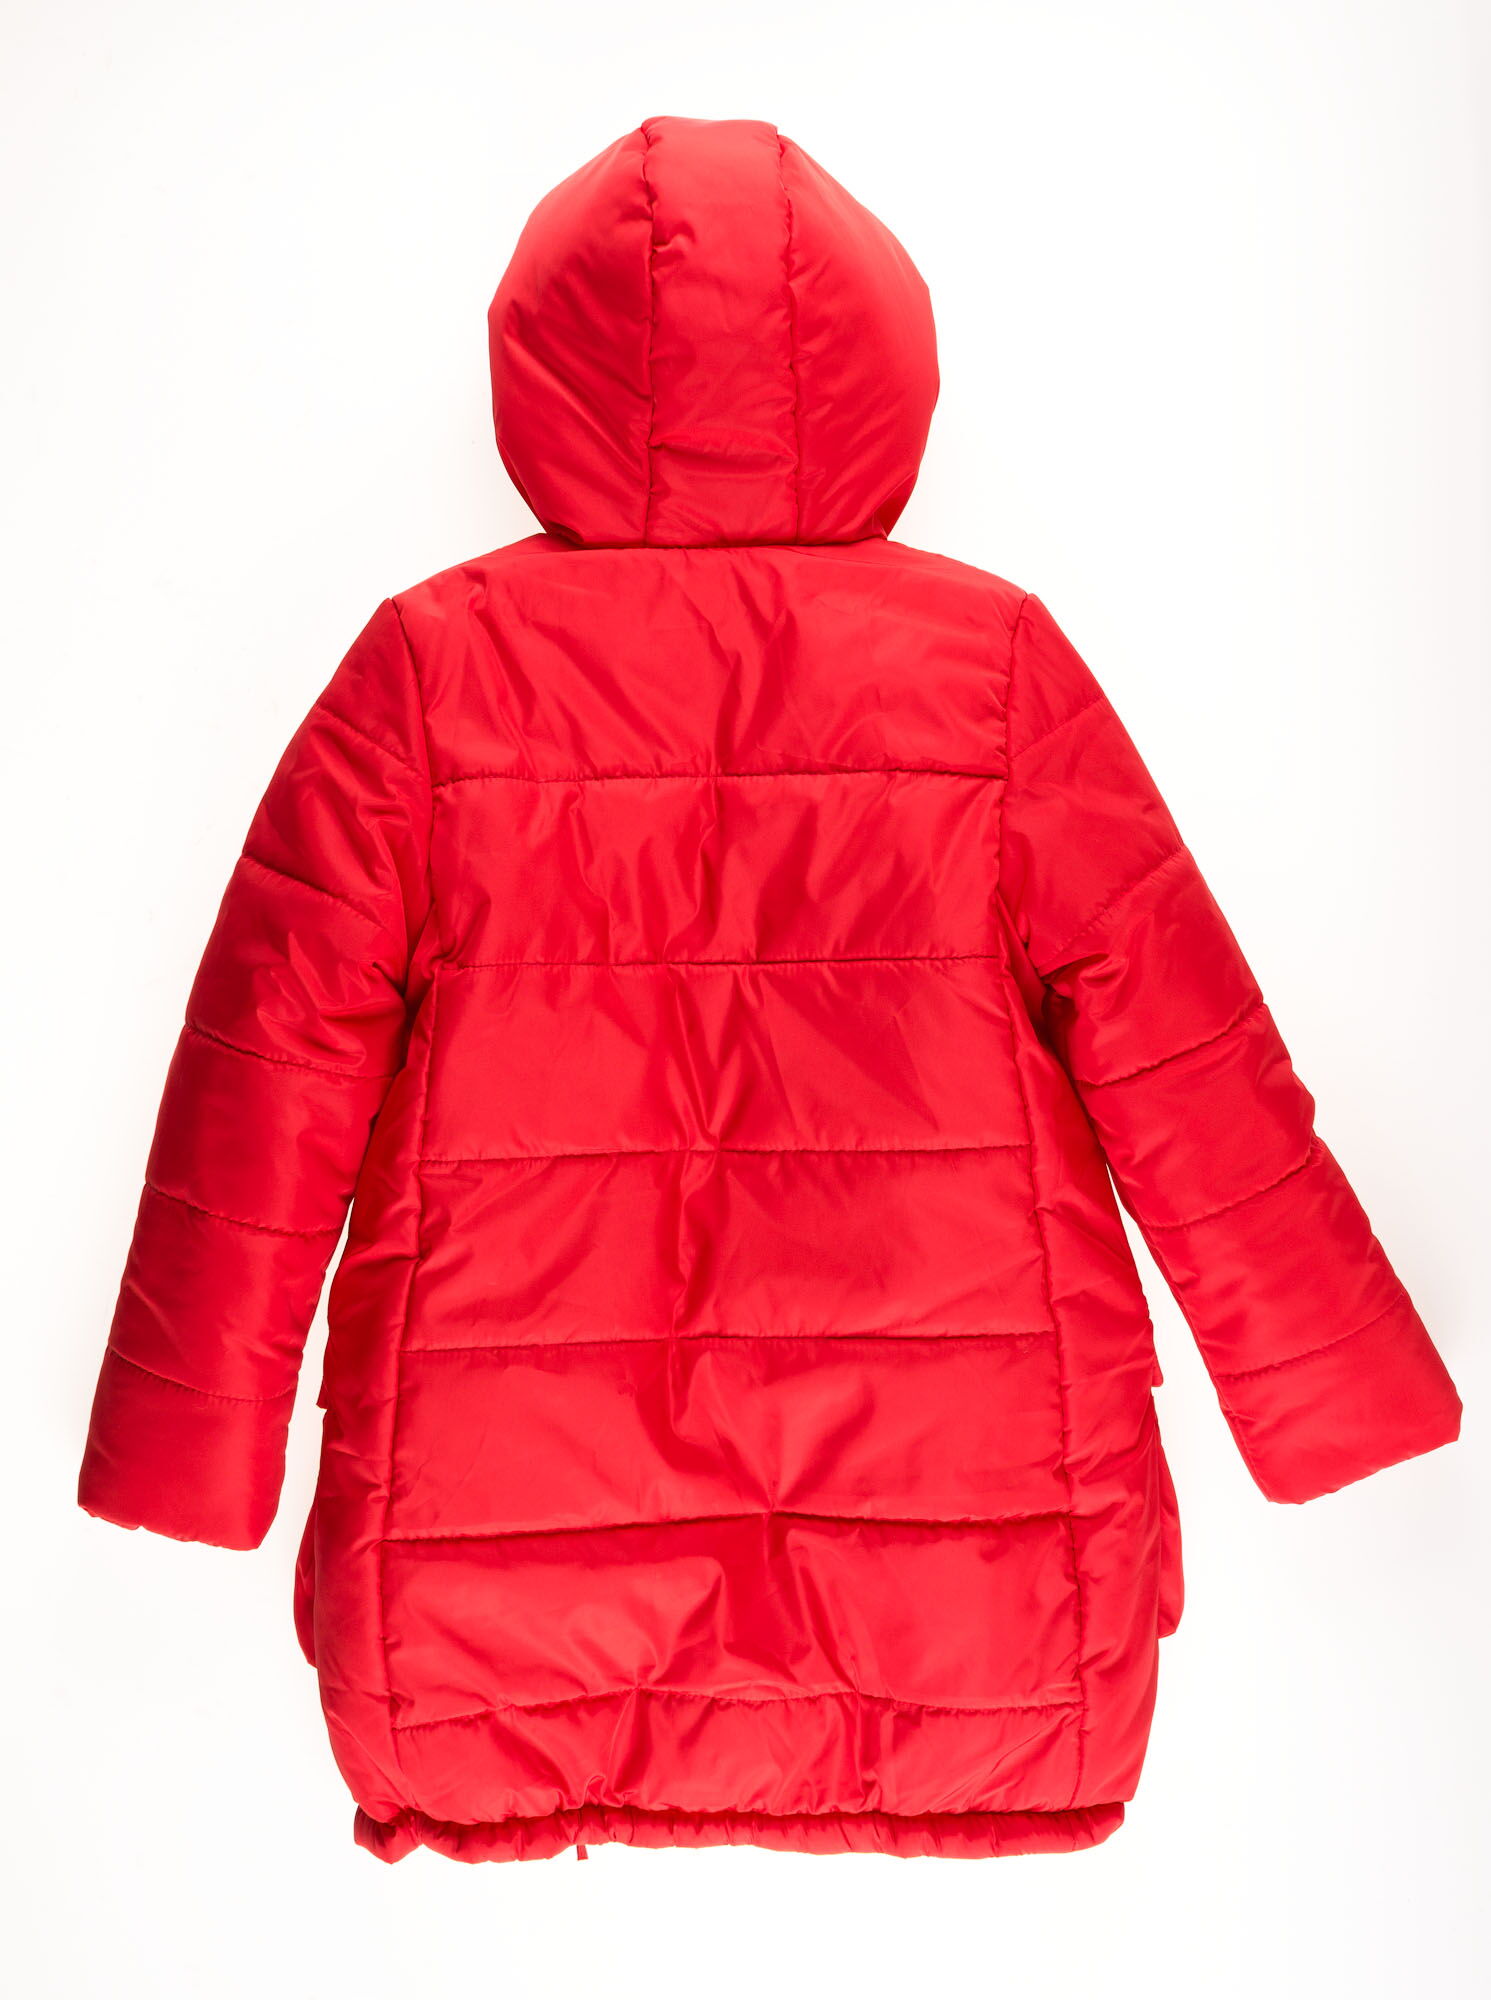 Куртка зимняя для девочки Одягайко красная 20049 - размеры